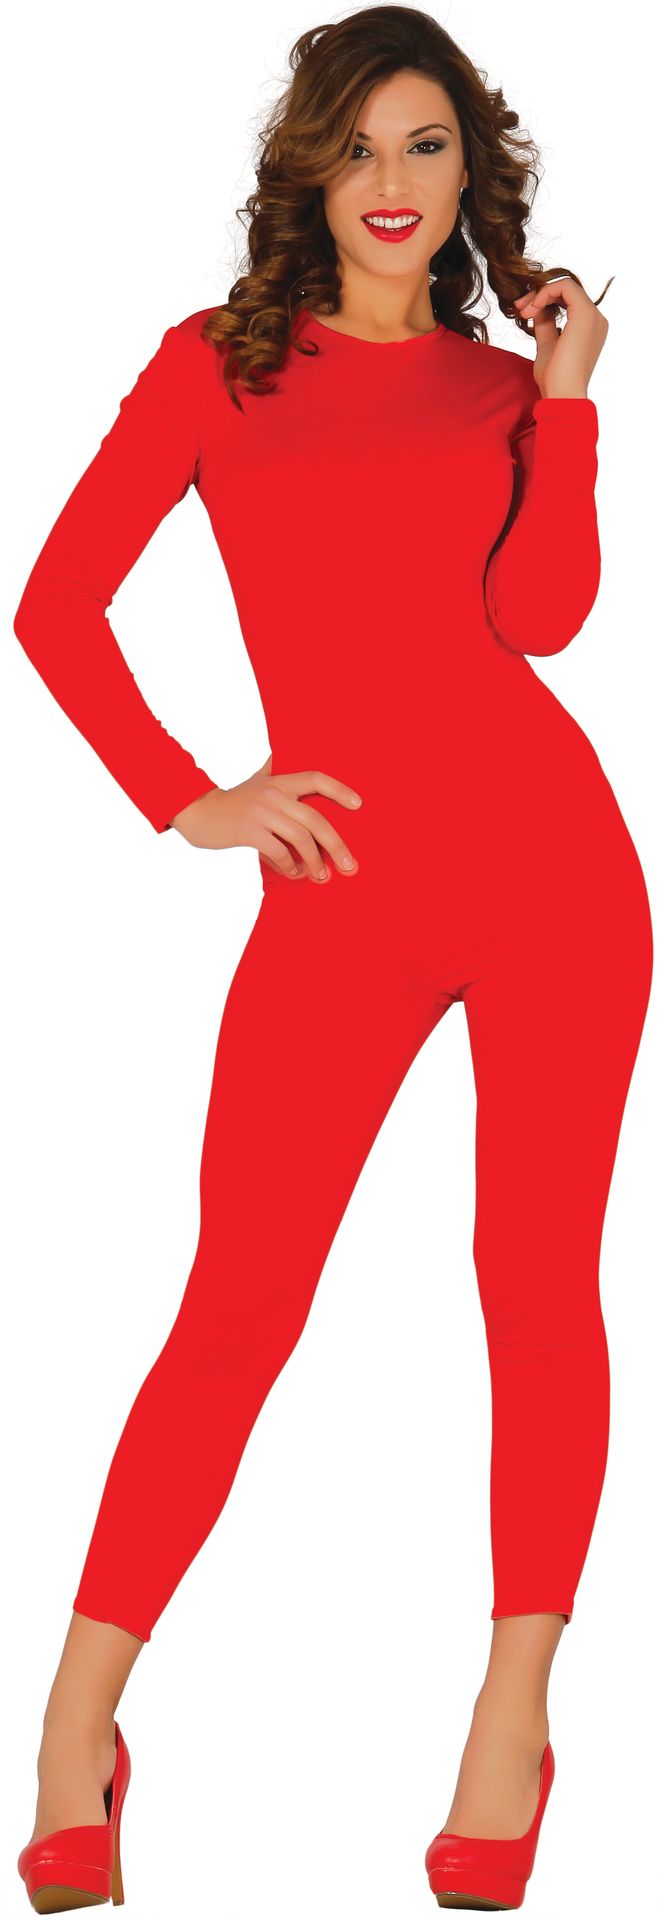 Rode jumpsuit dames